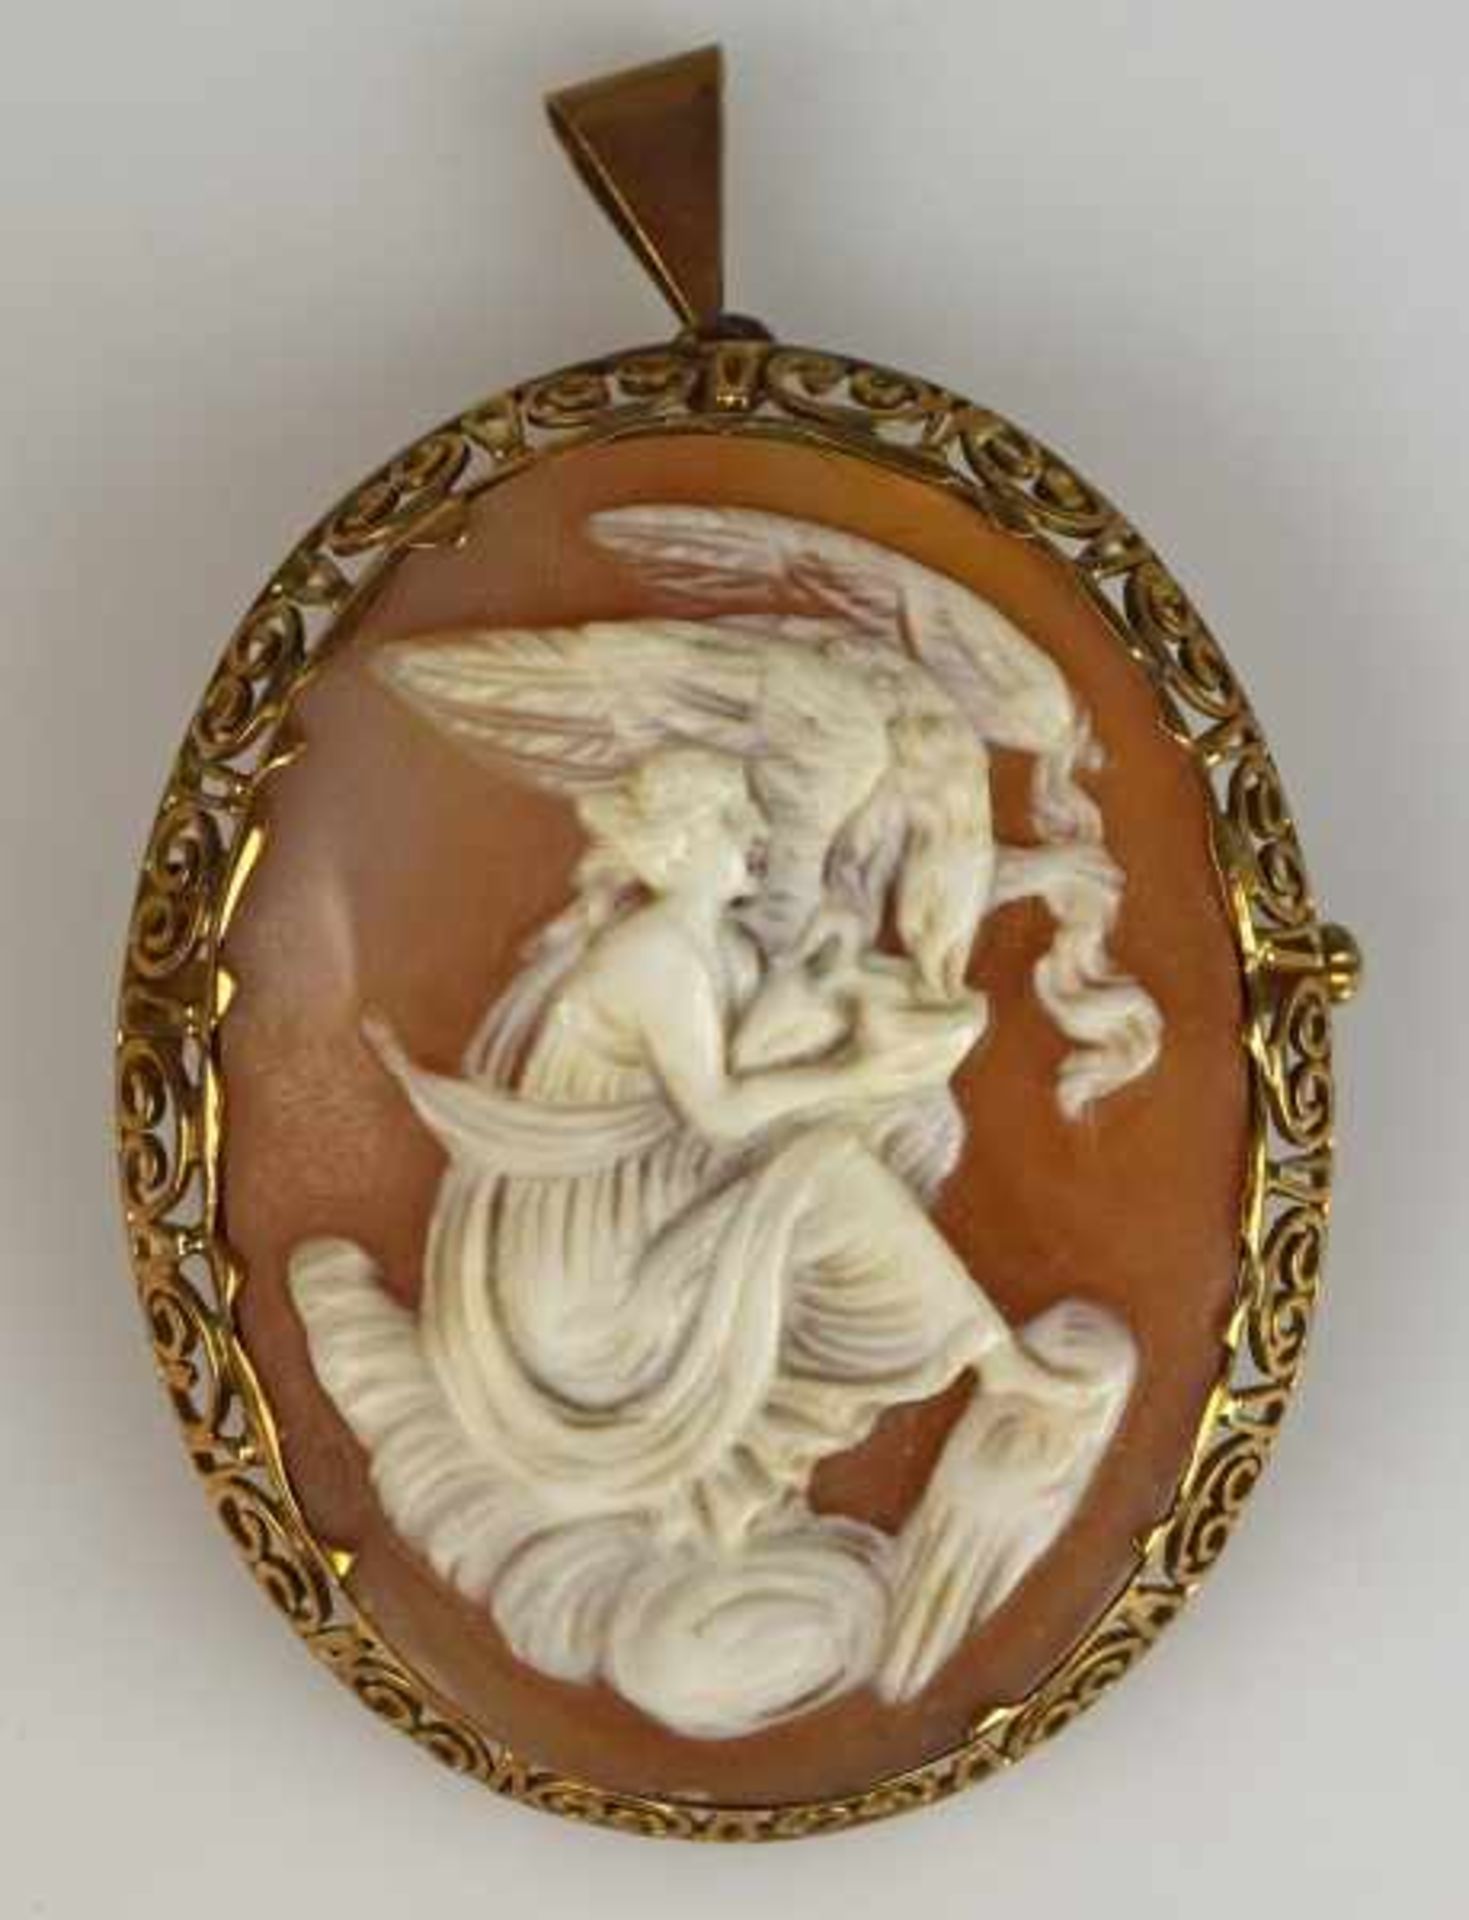 CAMEE oval, antikes Motiv mit Frau und Adler in Muschel geschnitten, durchbrochener Goldrahmen